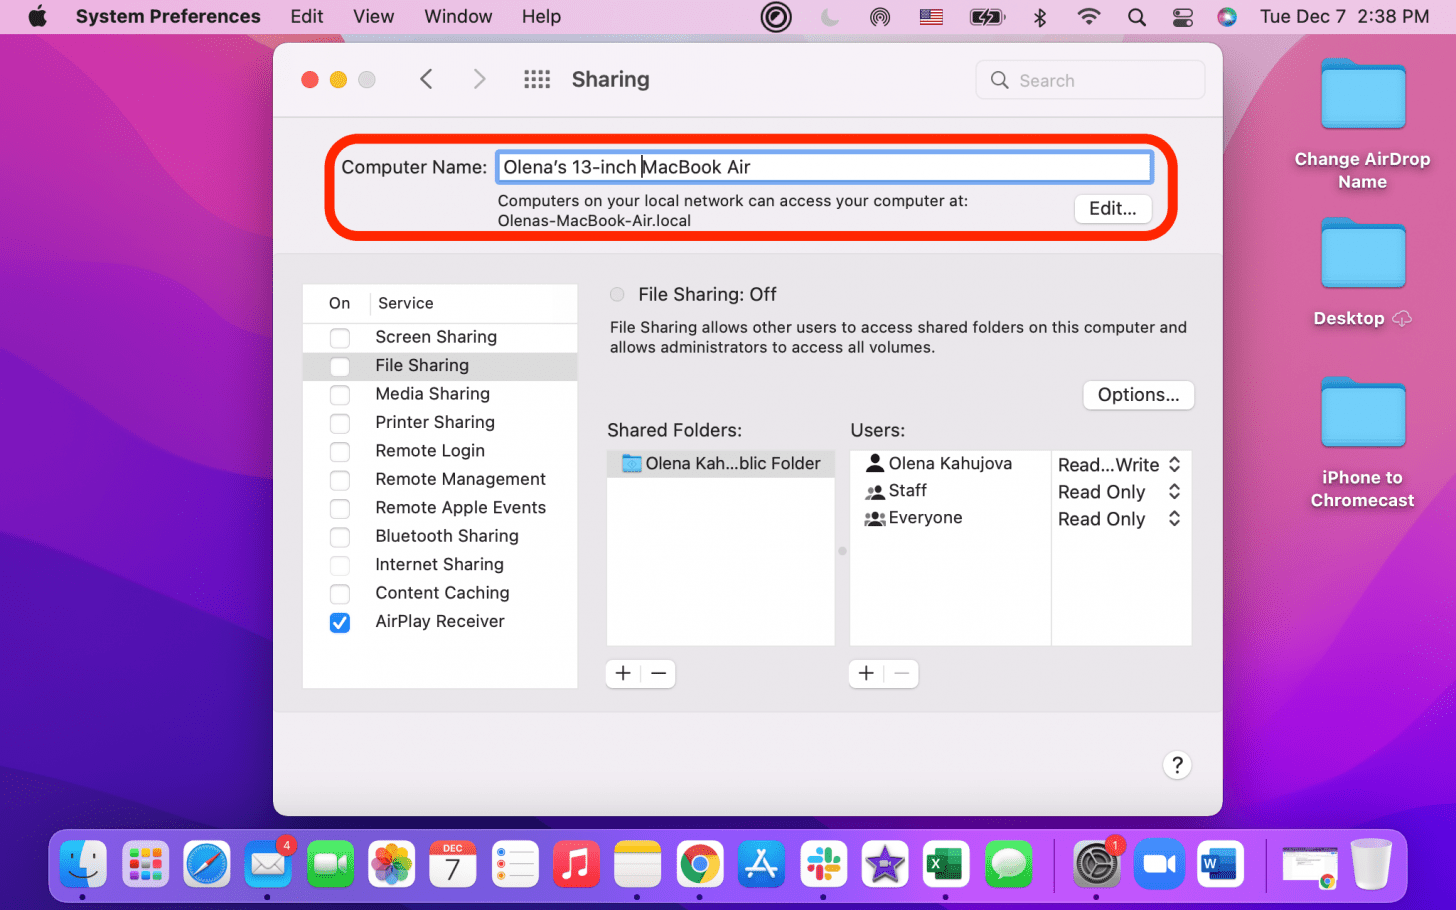 À côté de Nom de l'ordinateur, vous pouvez attribuer un nouveau nom DropBox à votre Mac.